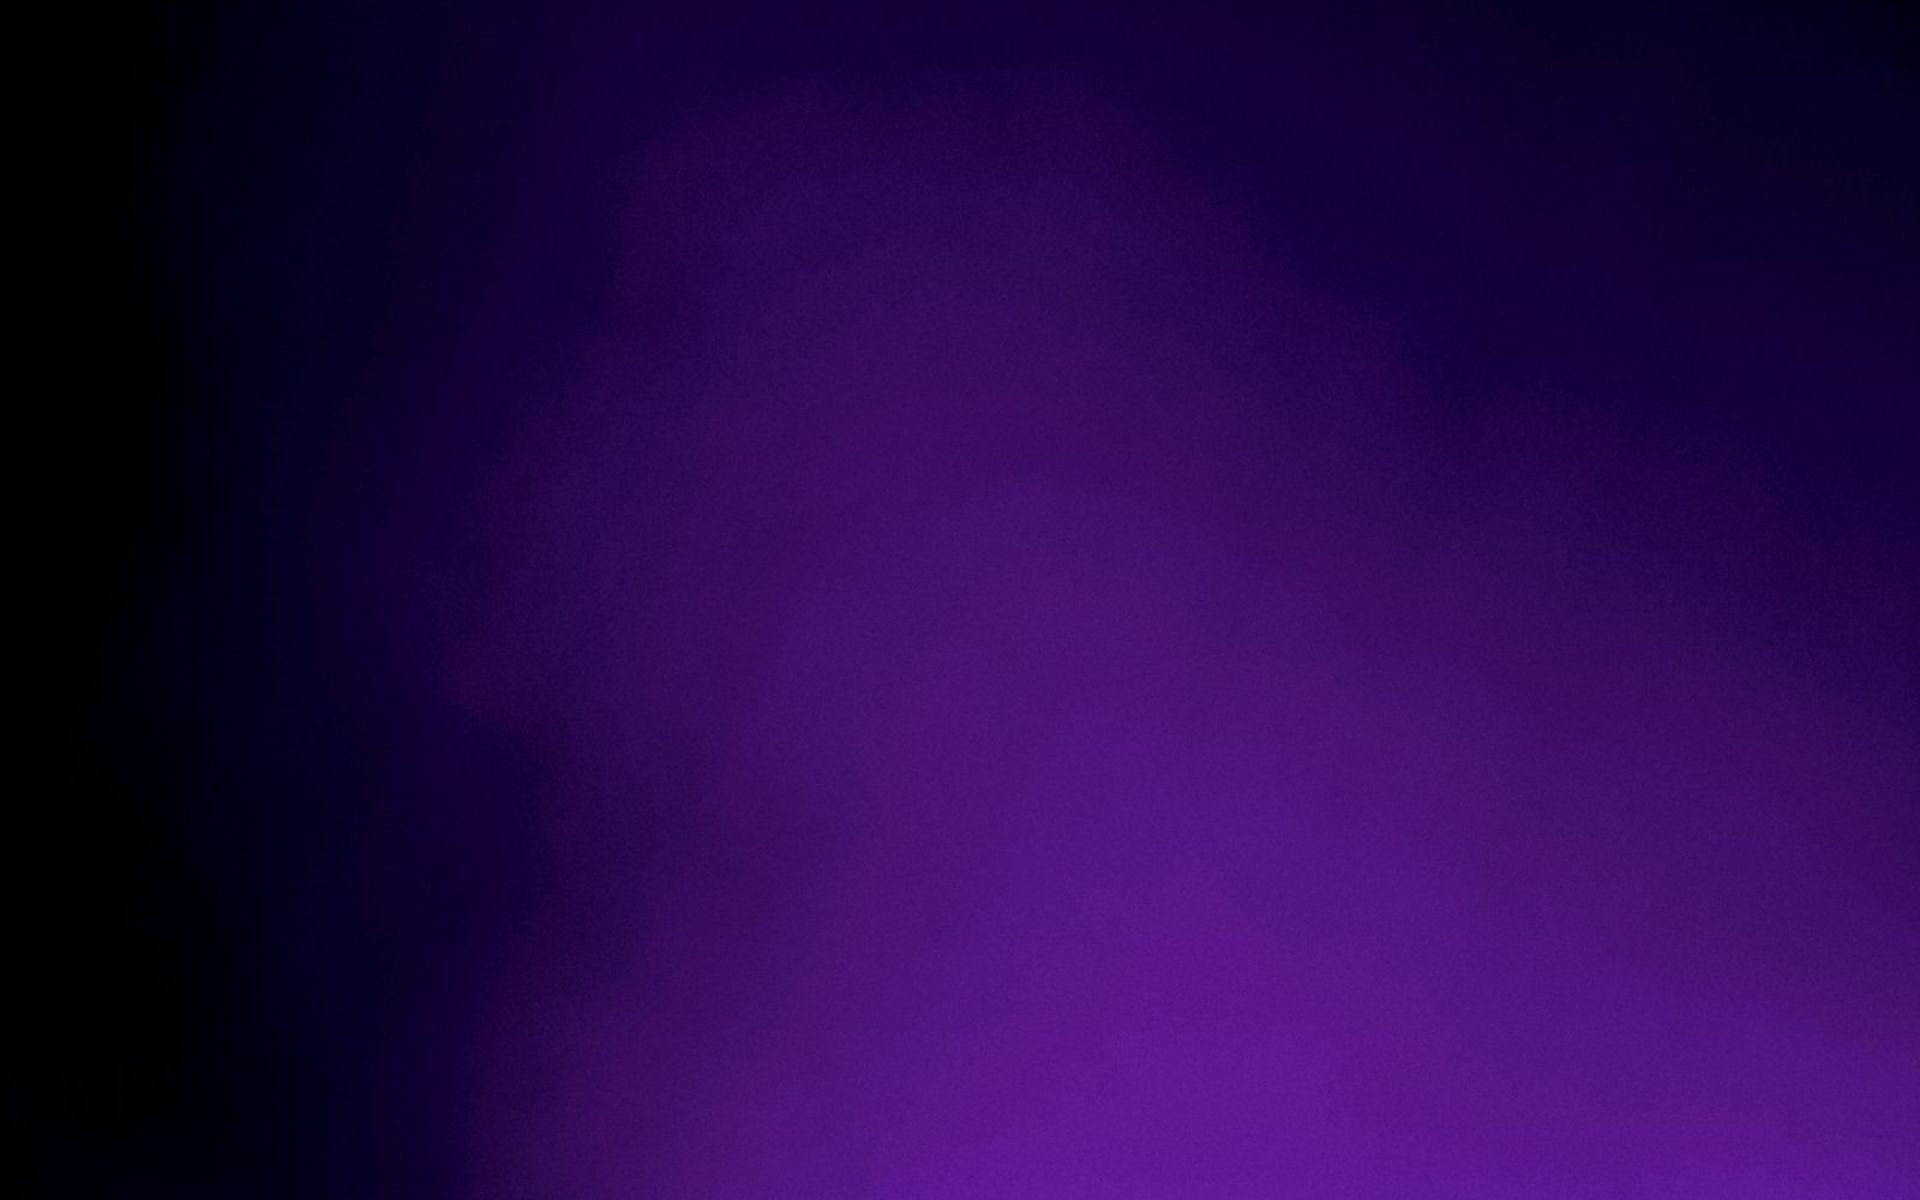 Dark Purple Background Powerpoint Background For